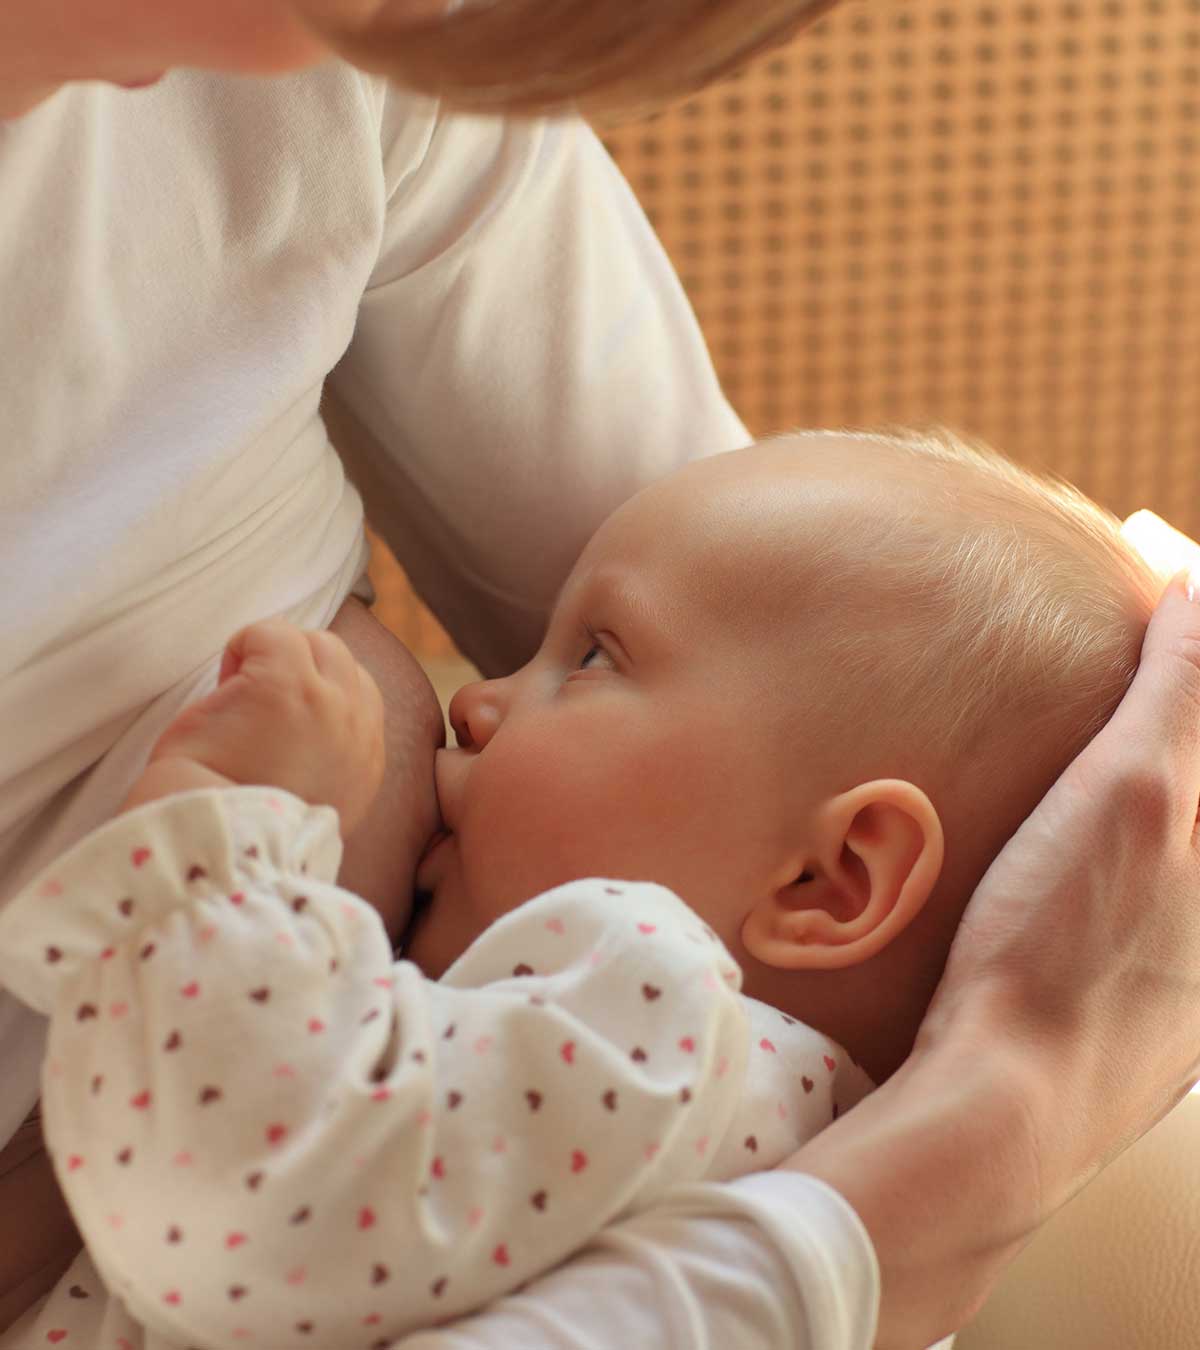 母乳喂养用益生菌:安全性、益处和副作用